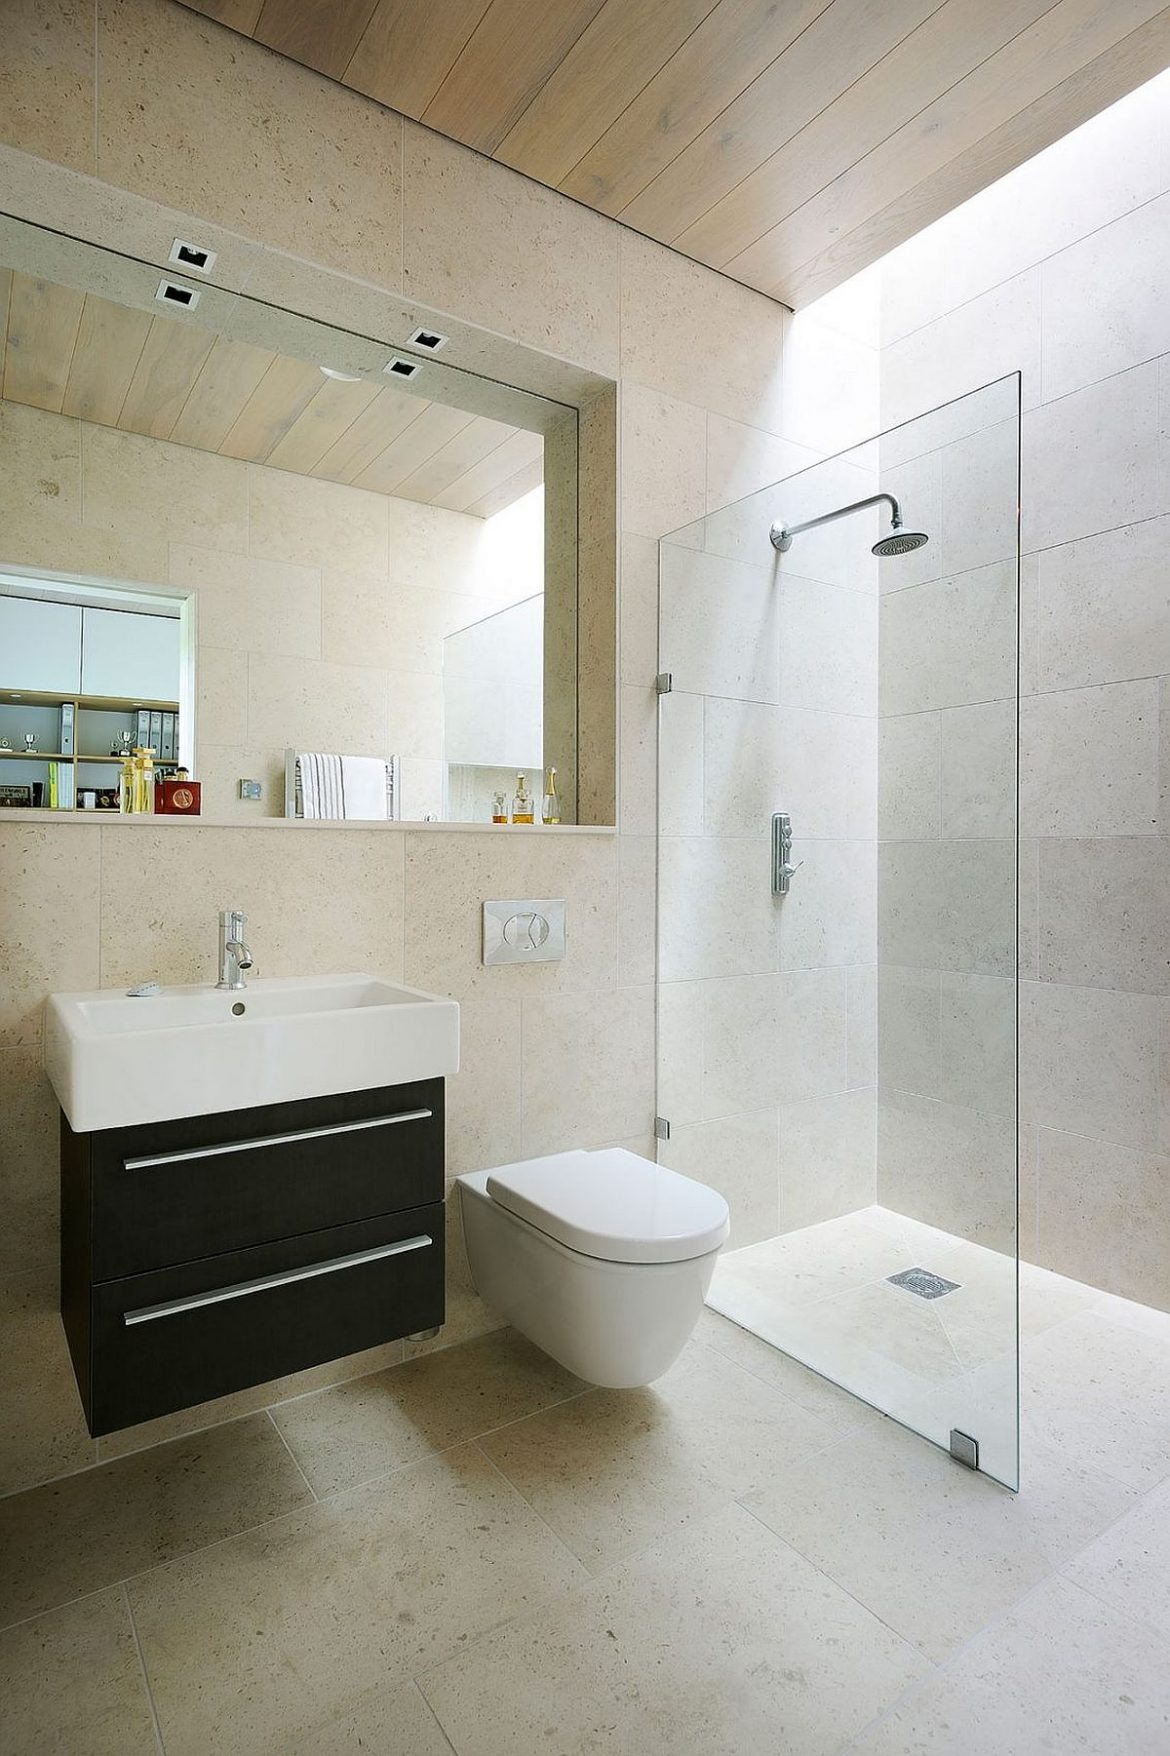 Tiling Bathroom Wall
 Bathroom Design Ideas Use the Same Tile the Floors and